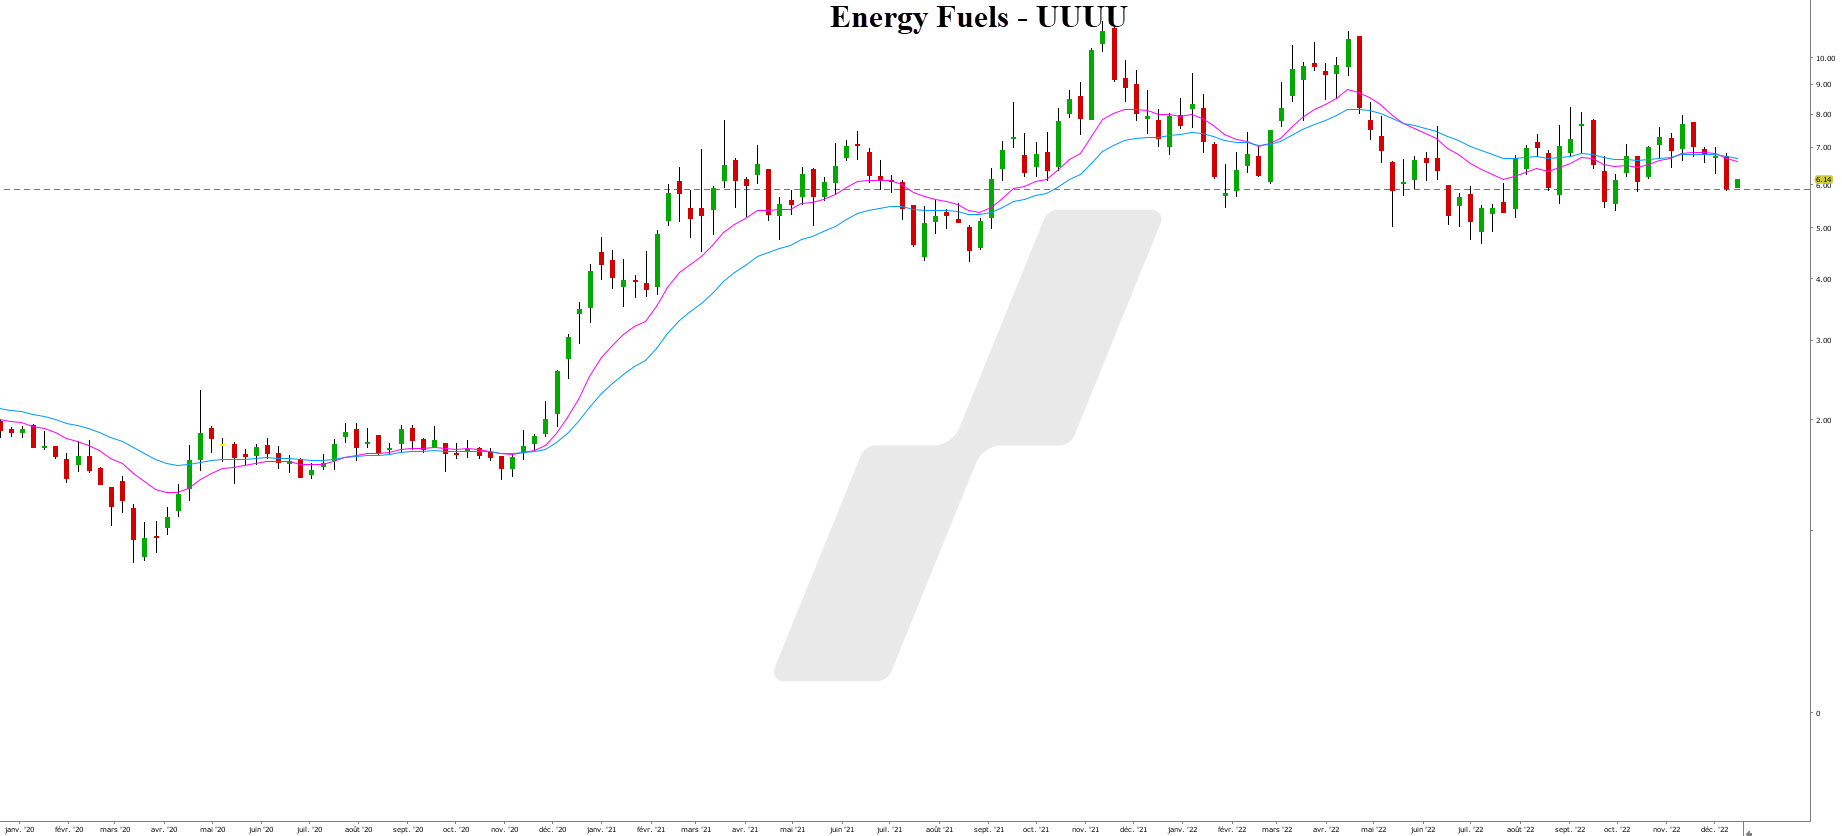 uranium trading - uranium bourse - graphique Energy Fuels